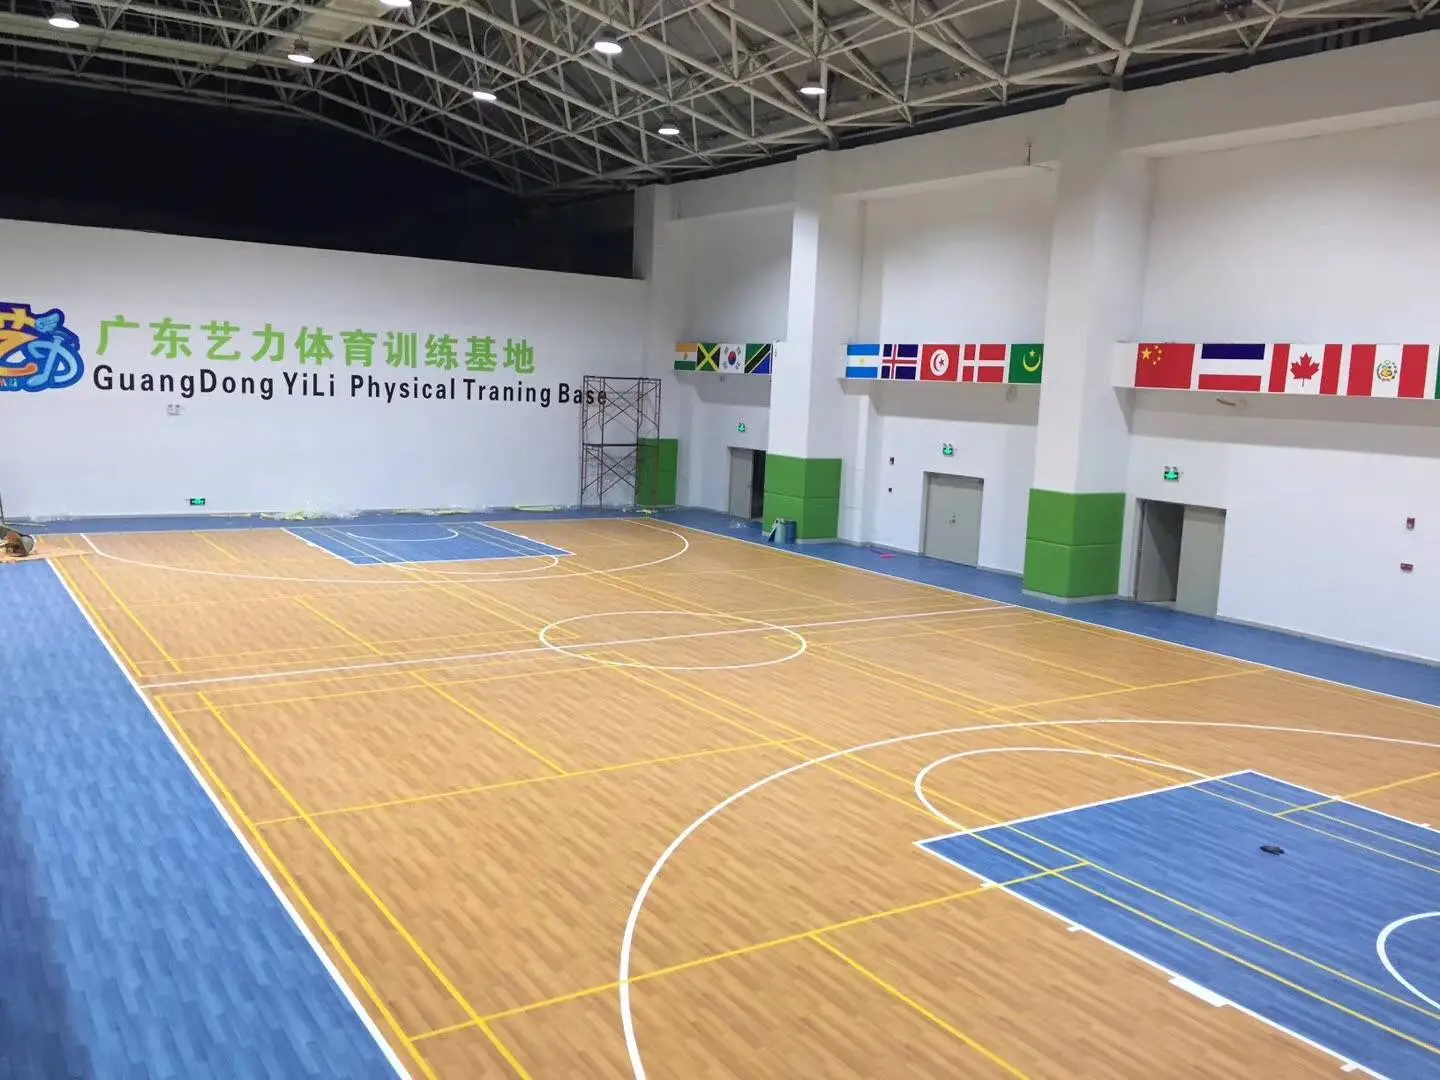 Wood texture flooring  basketball court